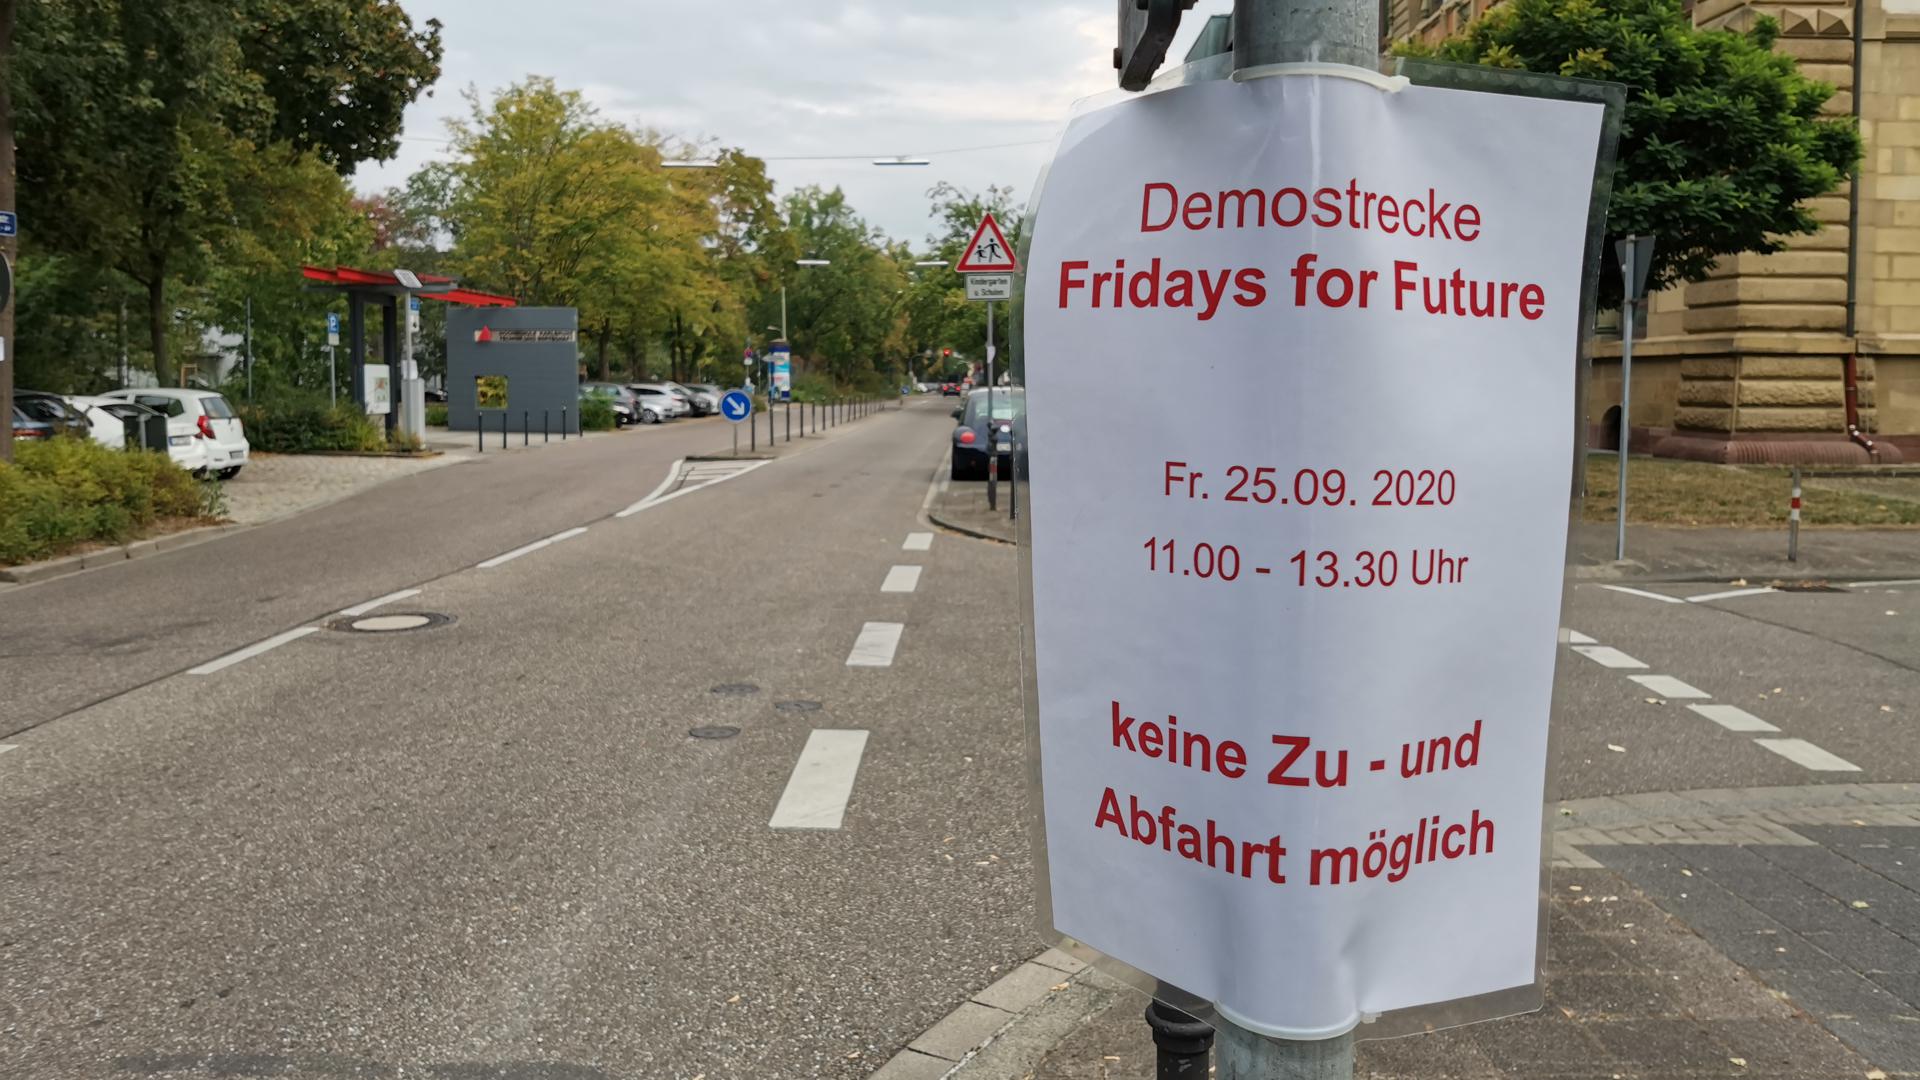 Auf einem ausgedruckten Blatt, das an einem Straßenschild hängt, steht: „Demostrecke Fridays for Future – Keine Zu- und Abfahrt möglich.“